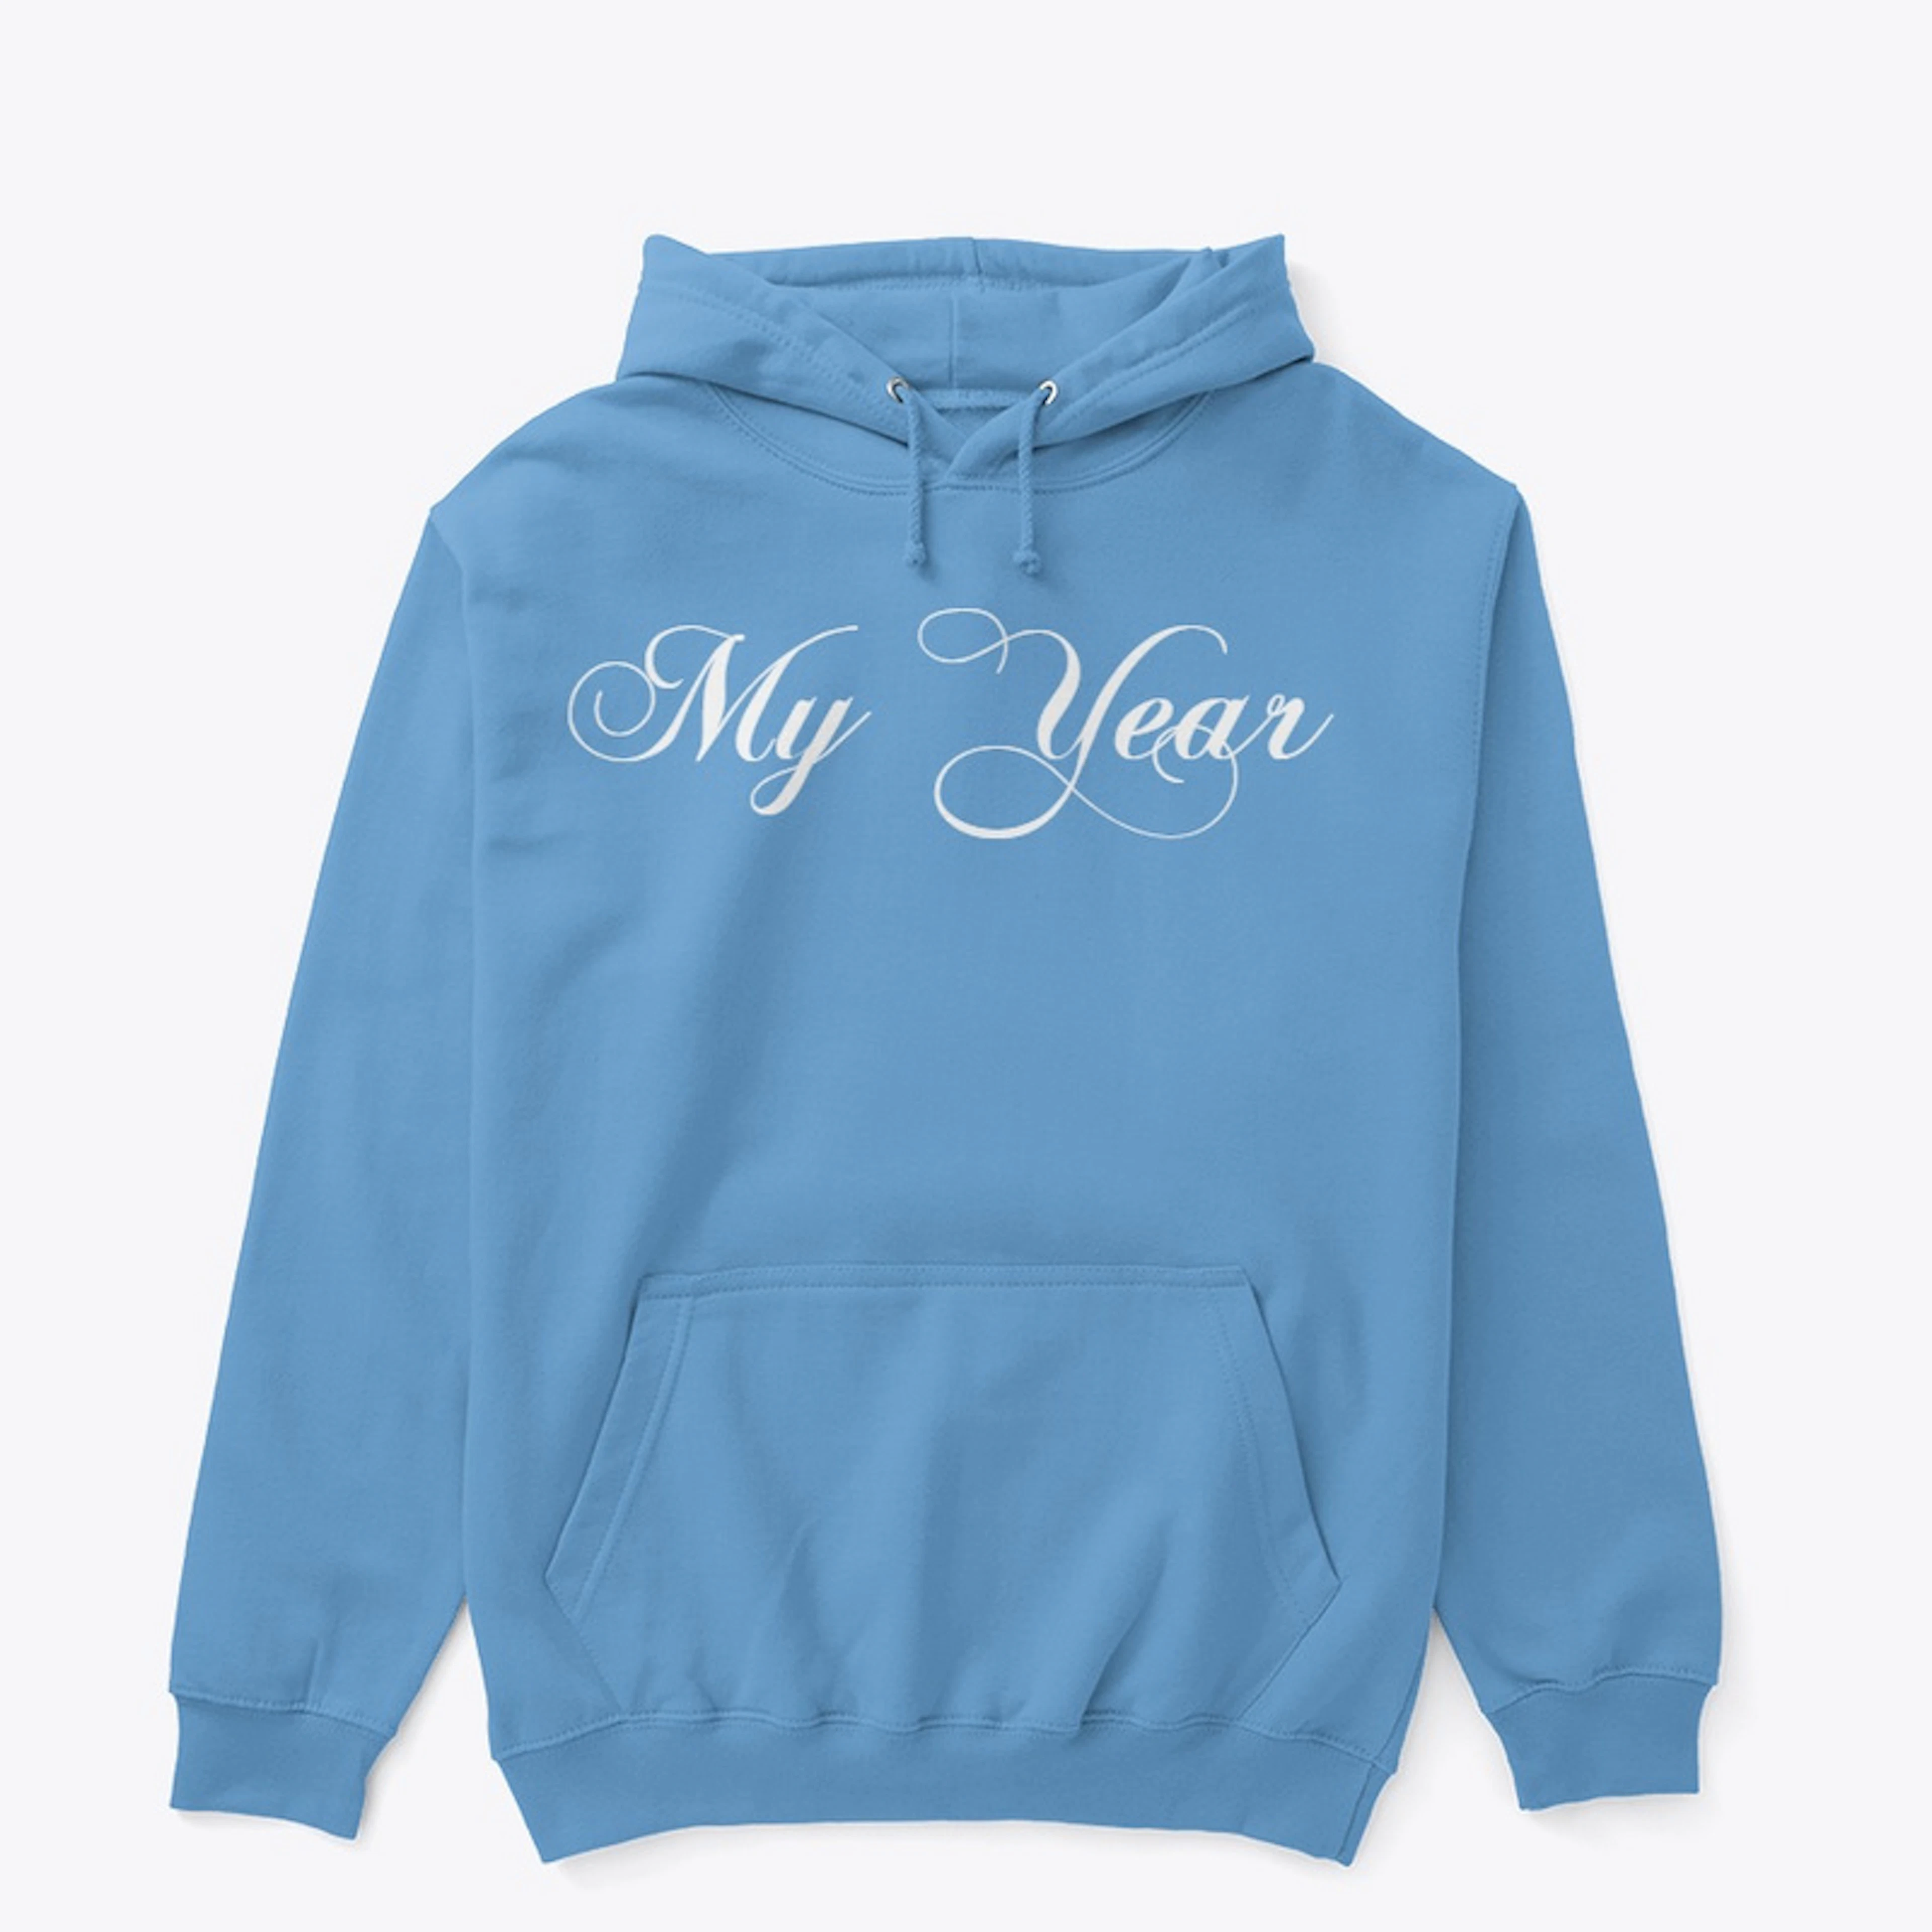 My Year (blue)